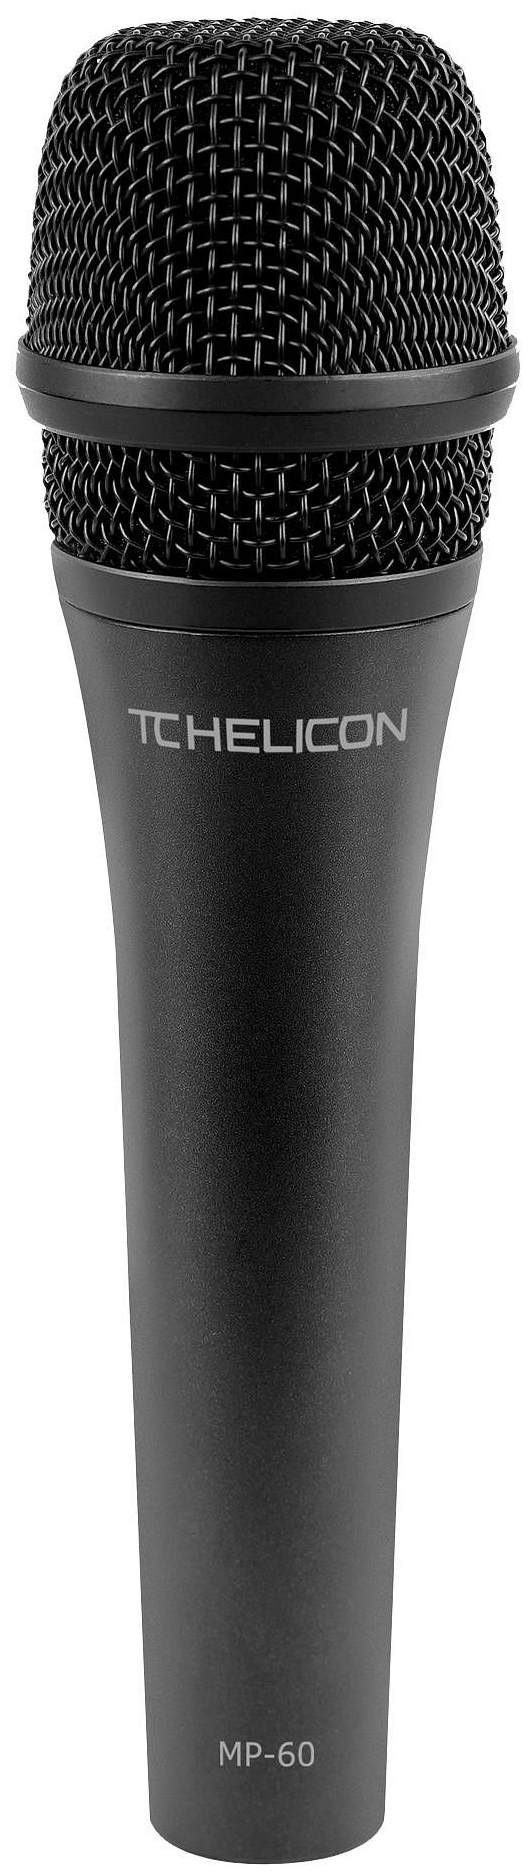 TC HELICON MP-60 - динамический кардиоидный вокальный ручной микрофон